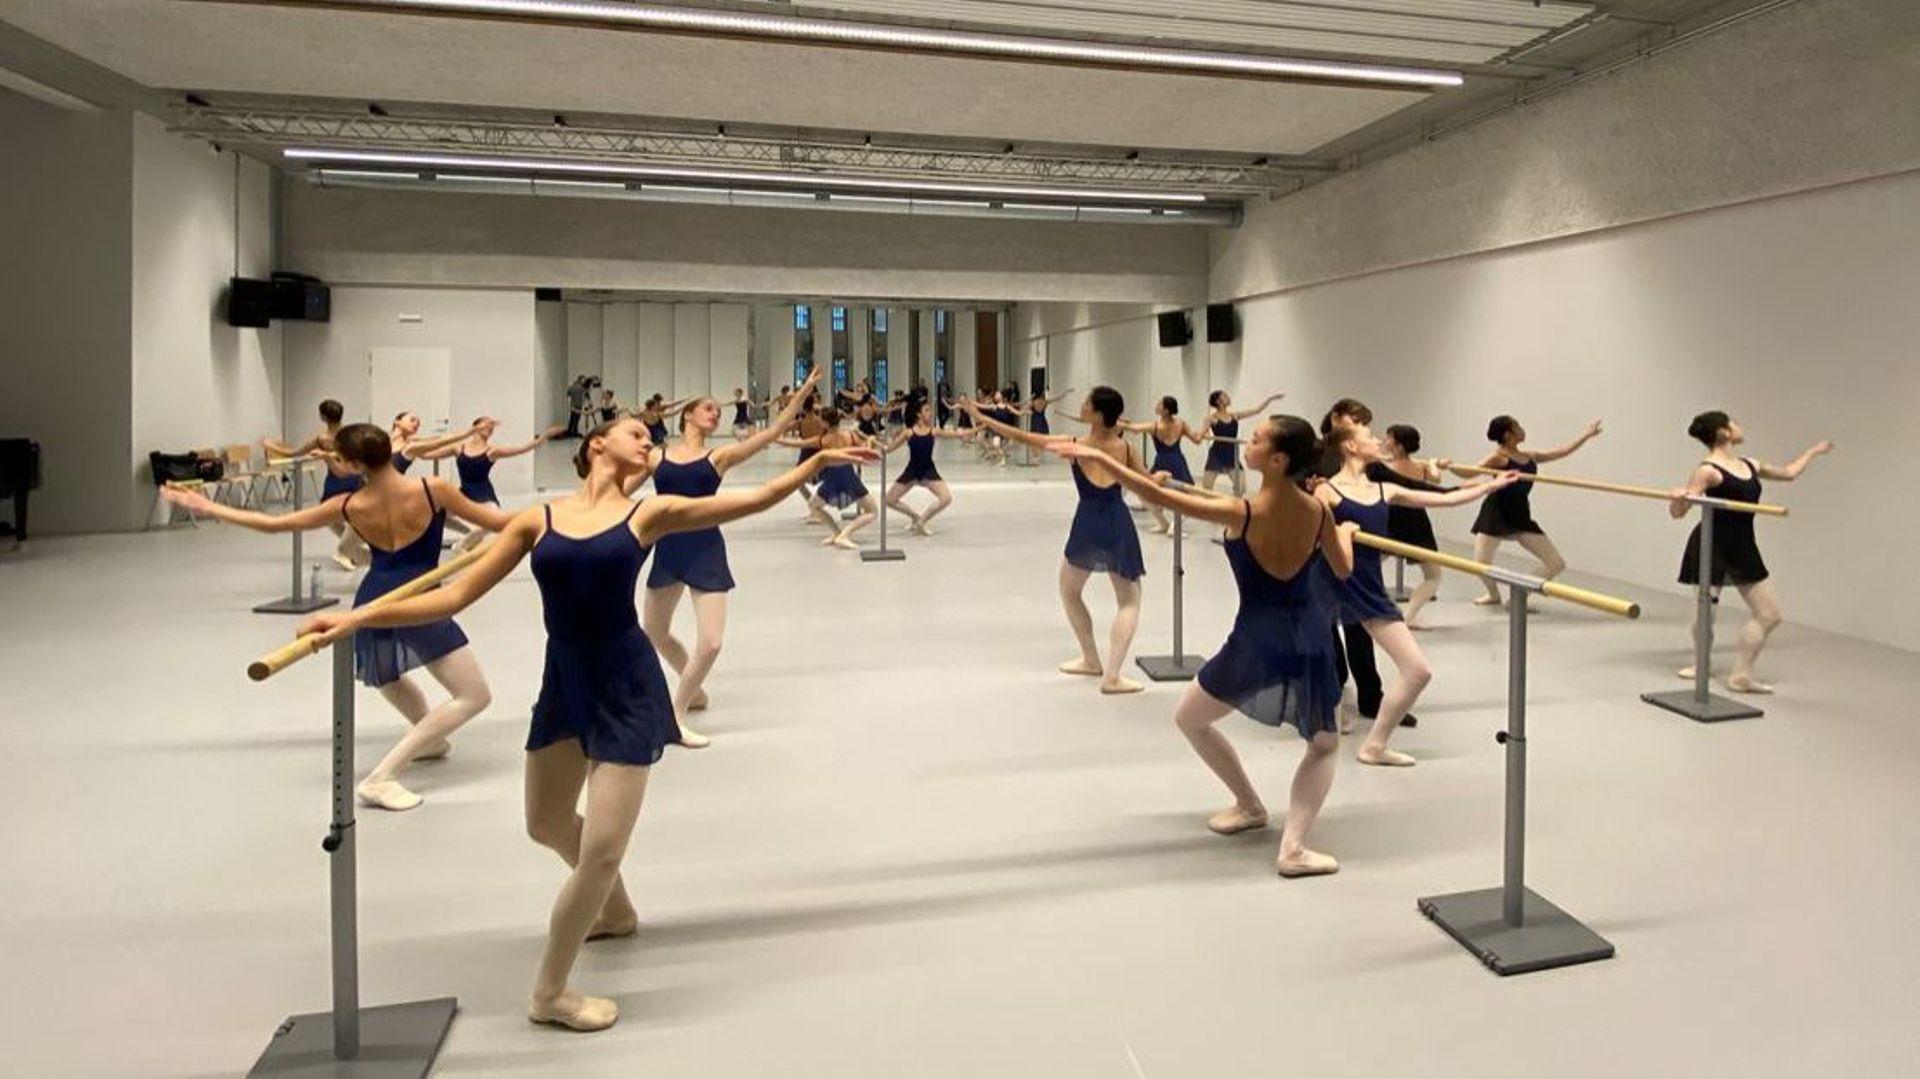 Mosa Ballet School : à Liège, la nouvelle école de danse a ouvert ses portes au public